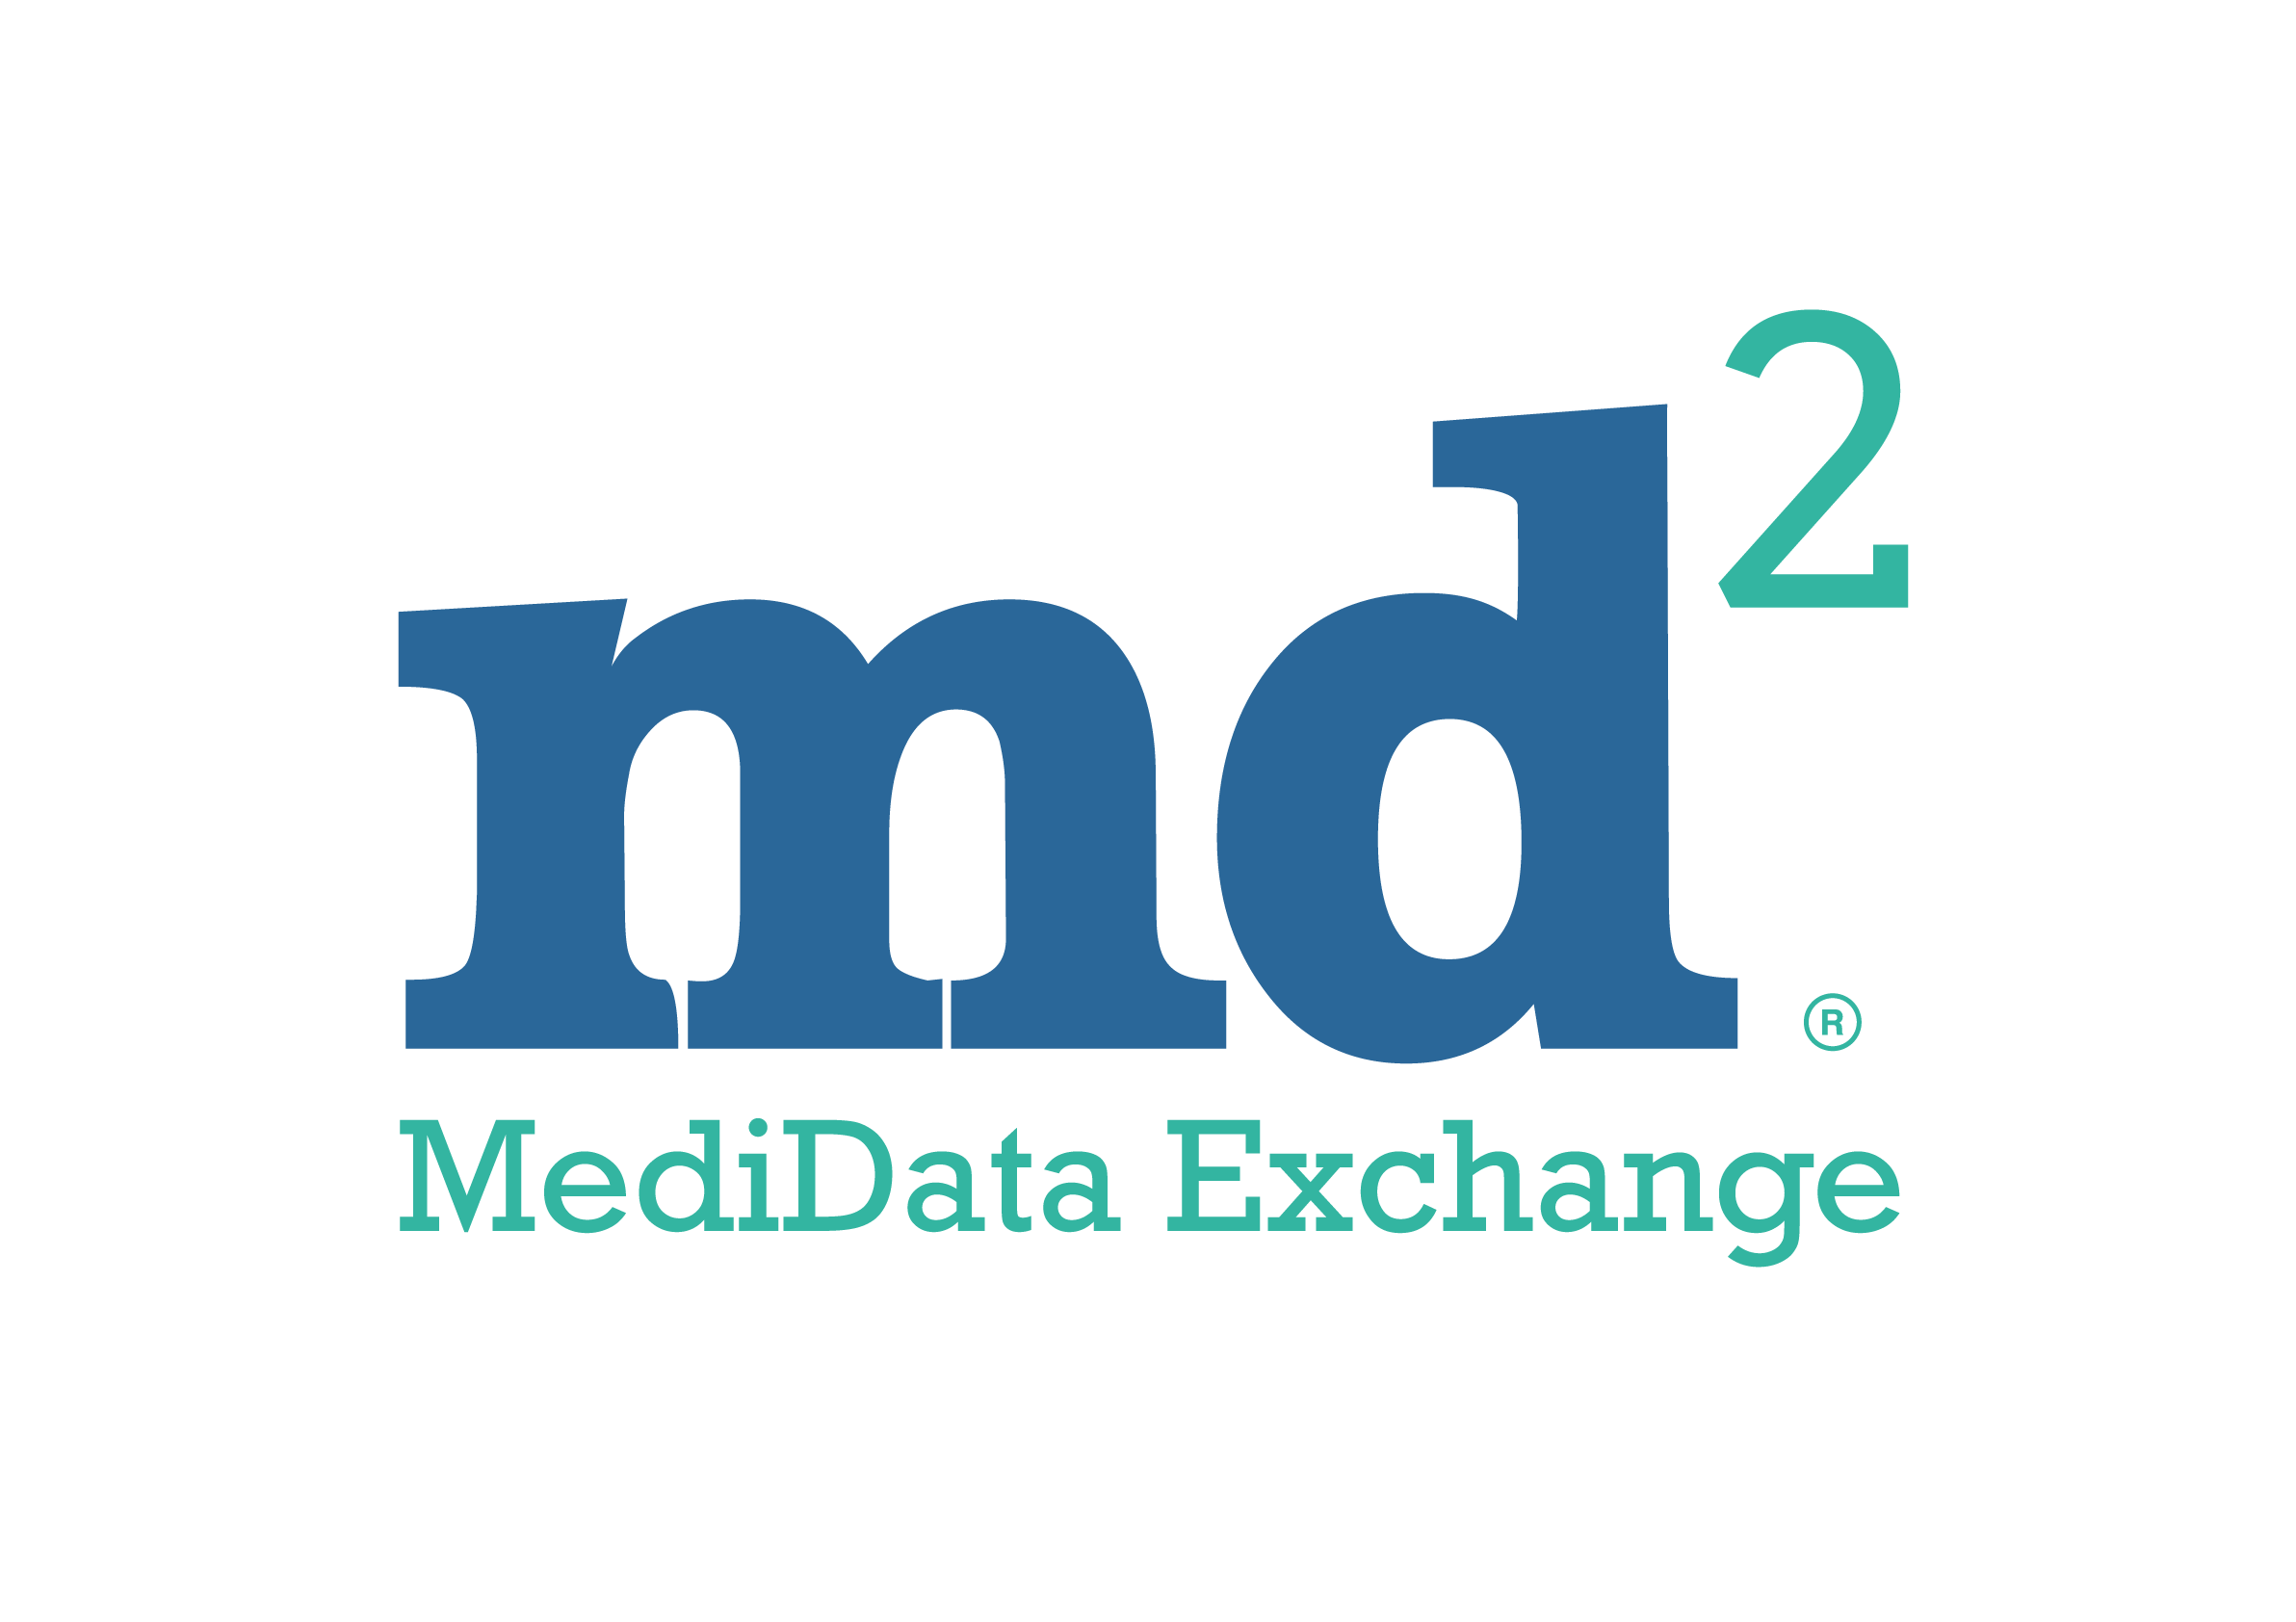 Medidata Logo - MediData Exchange